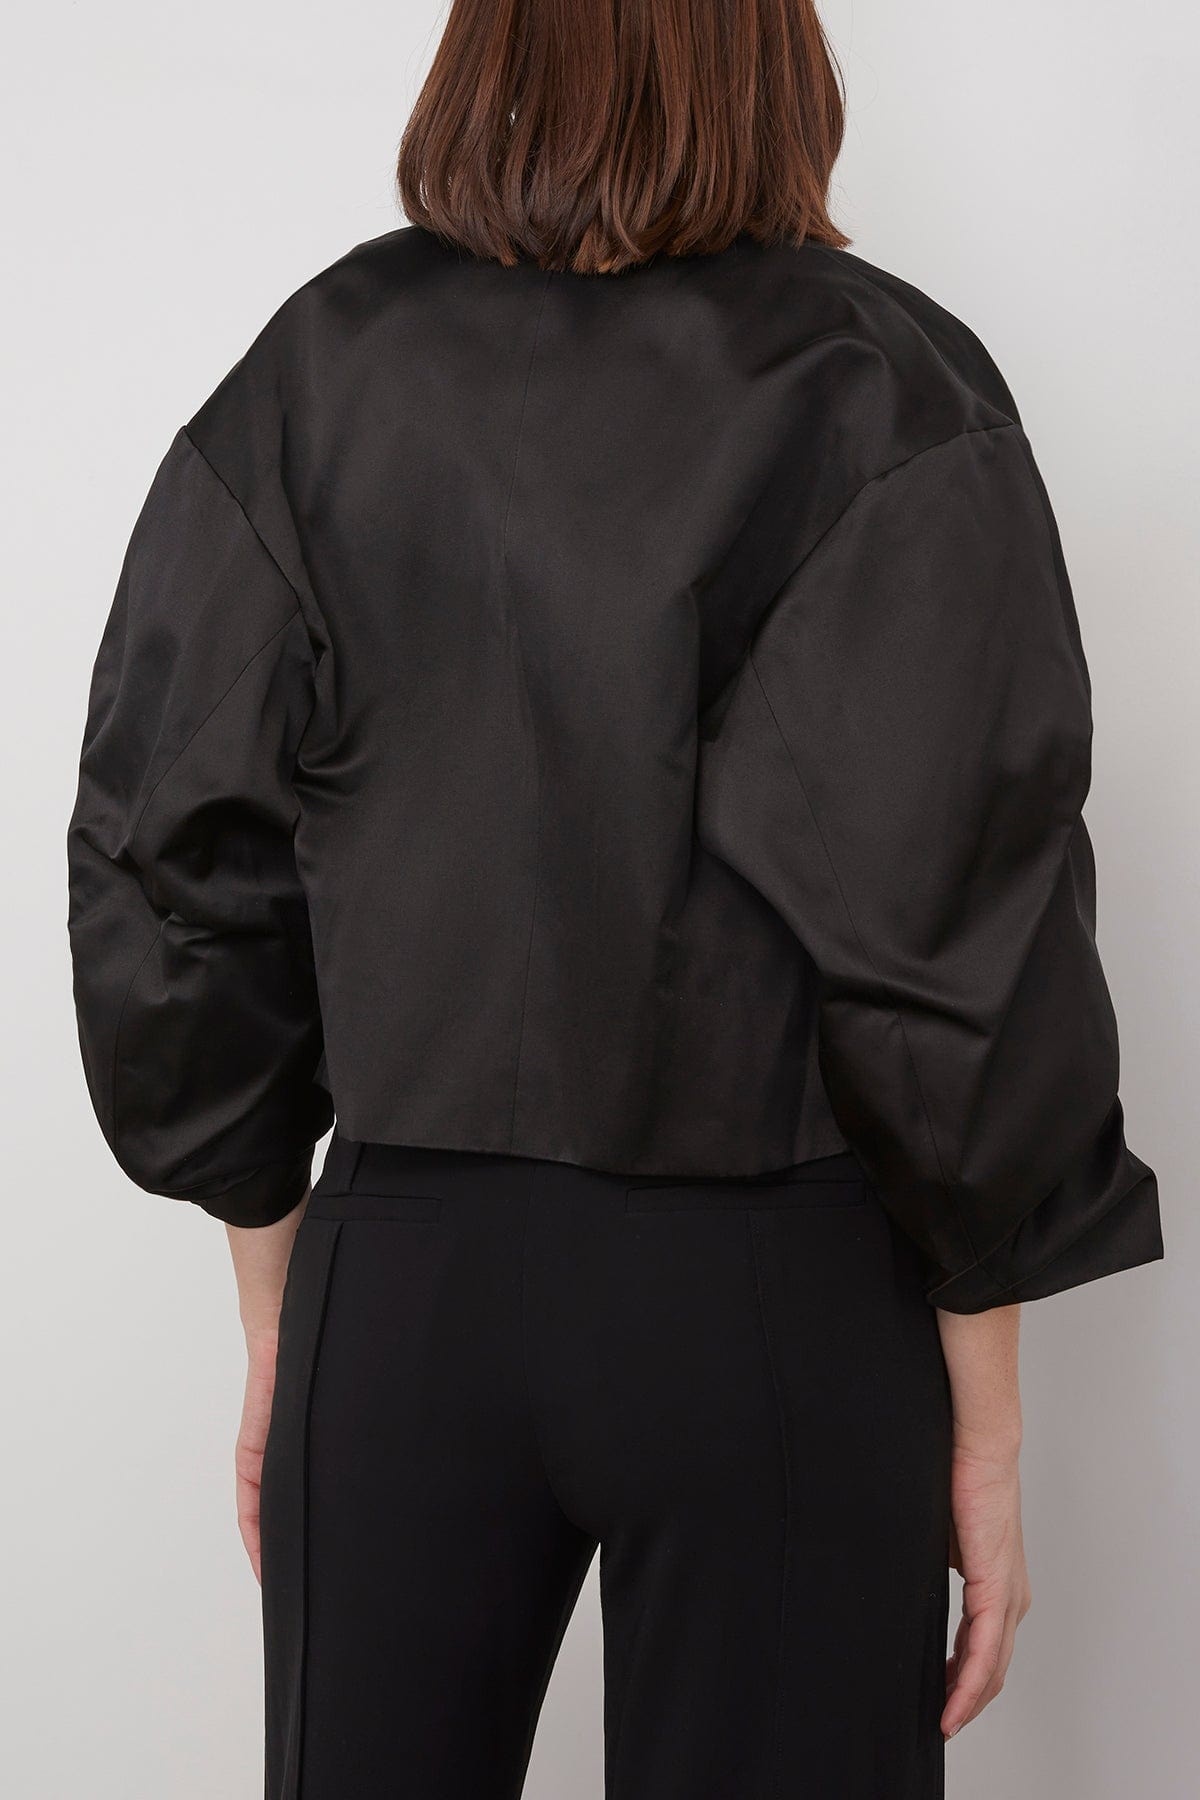 Crinkled Sleeve Jacket in Black - 4